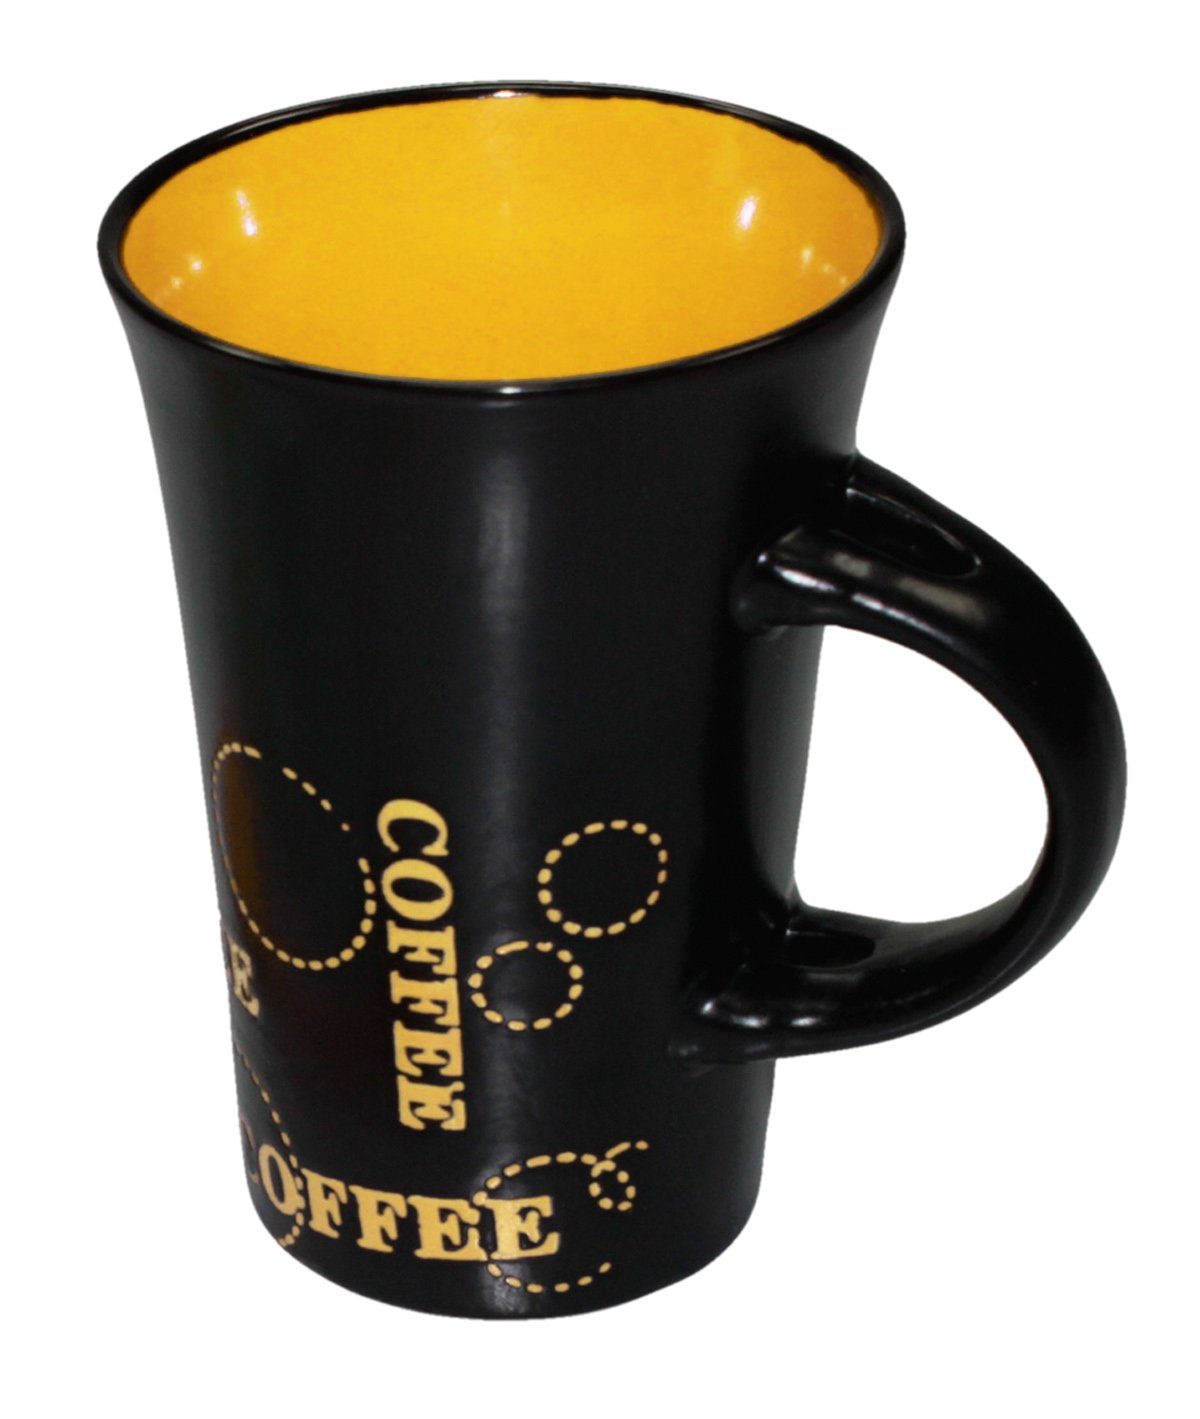 passend Haus Kaffeetasse Deko Keramik schwarz Kaffeebecher Geschirr-Set (1-tlg), Gelb Keramik XL Becher und Tasse bunt